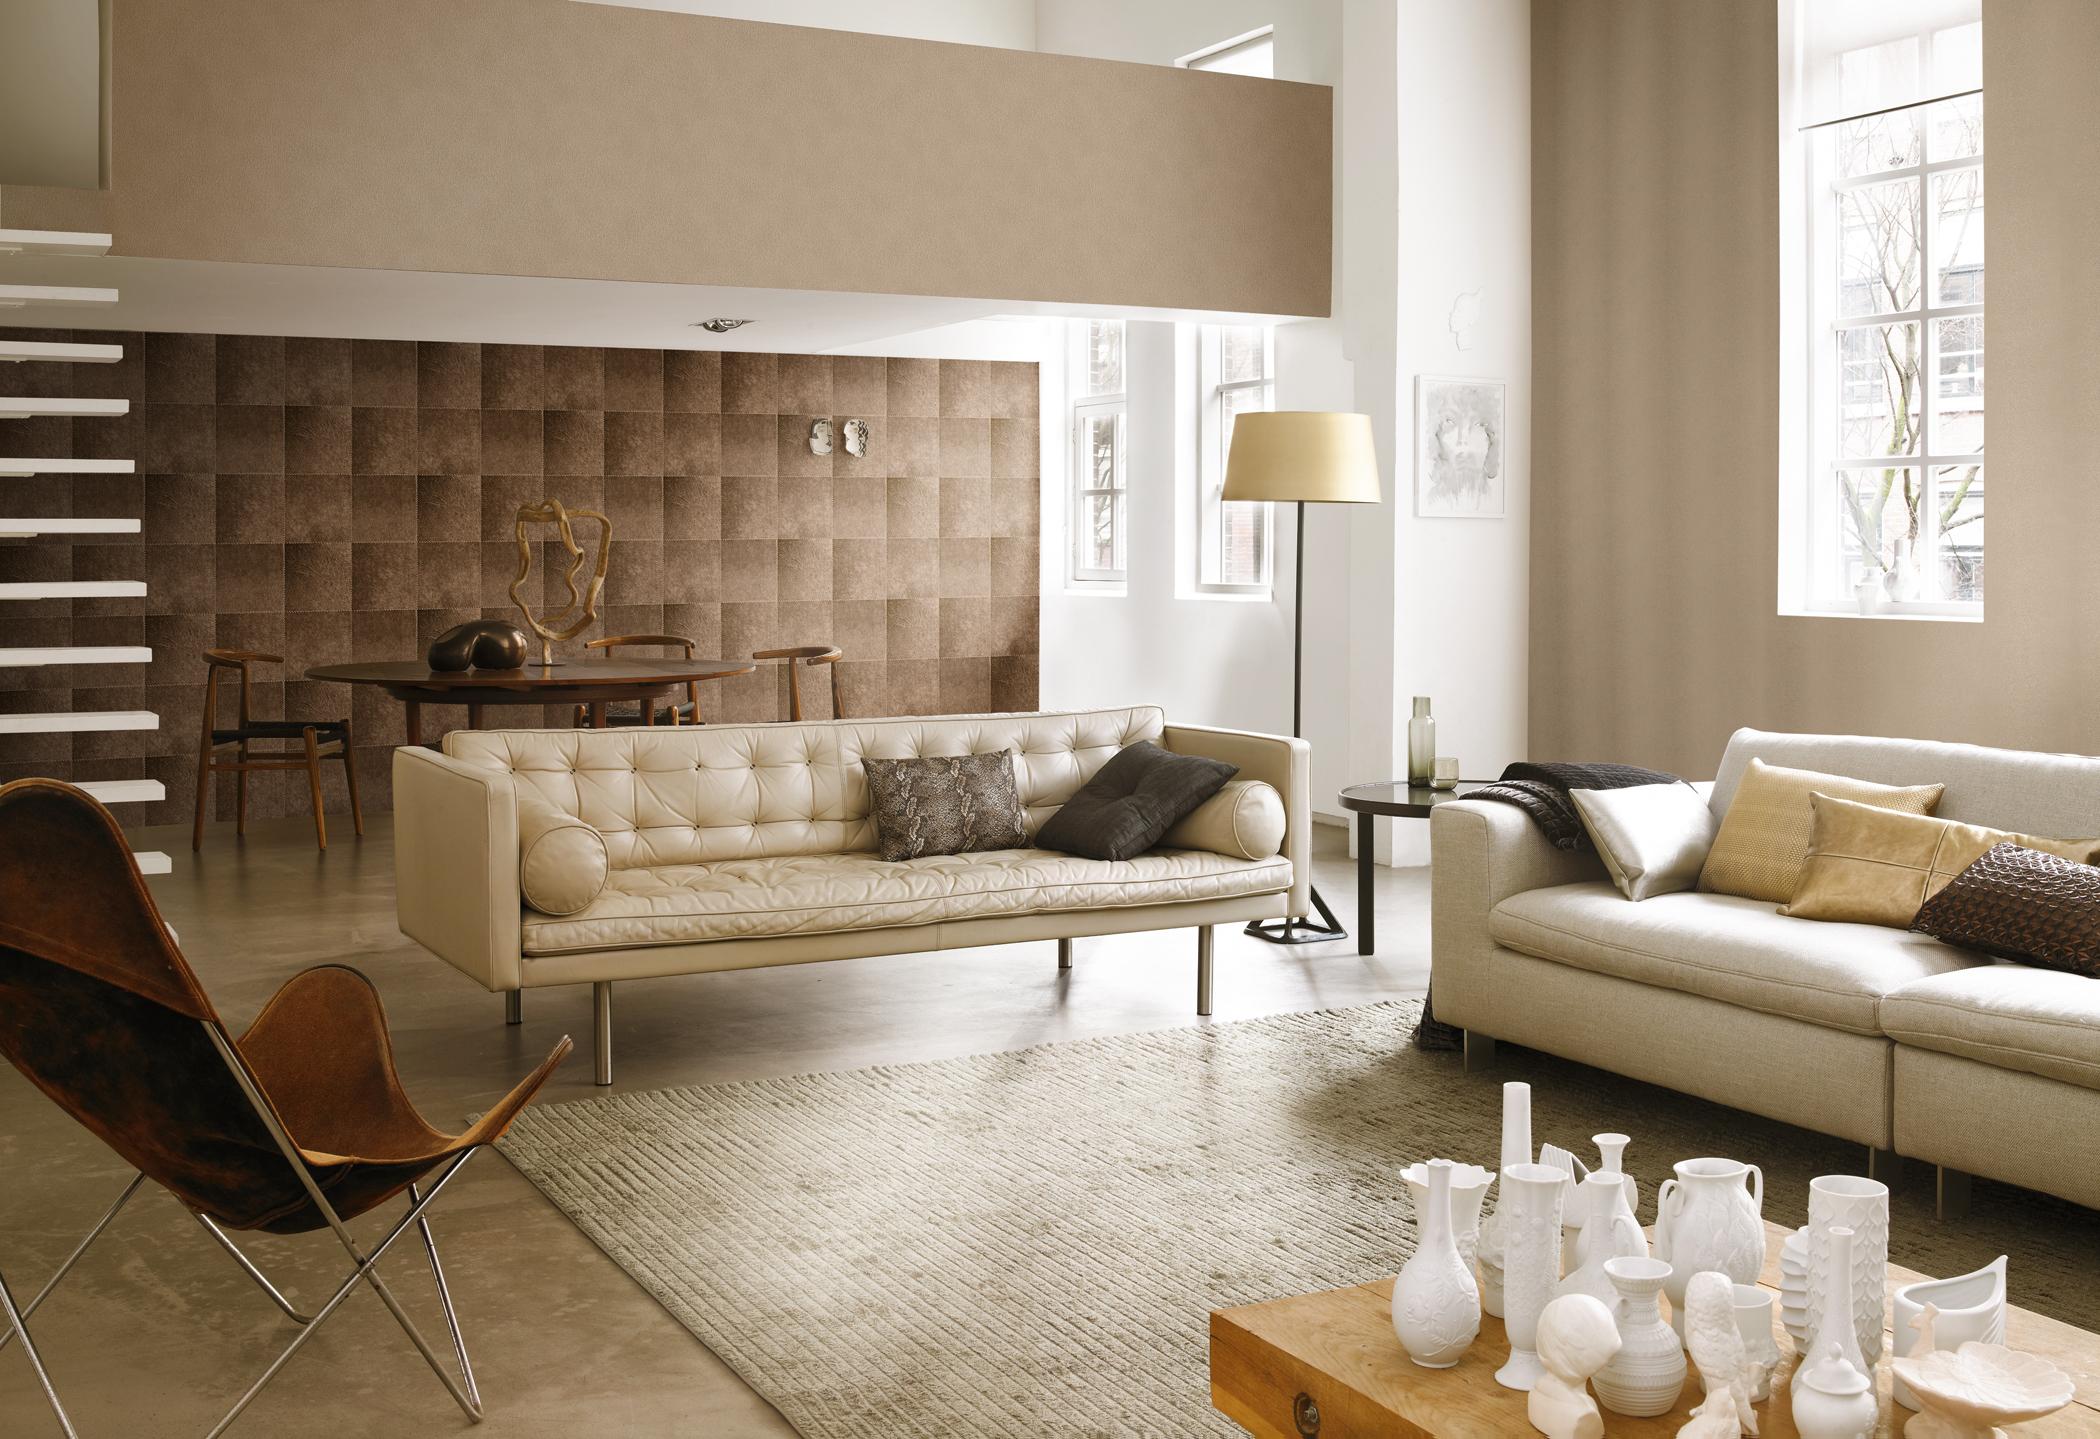 Braun gemusterte Tapete im klassischen Wohnzimmer #ledersofa #wandgestaltung #stehlampe #vliestapete ©Rasch